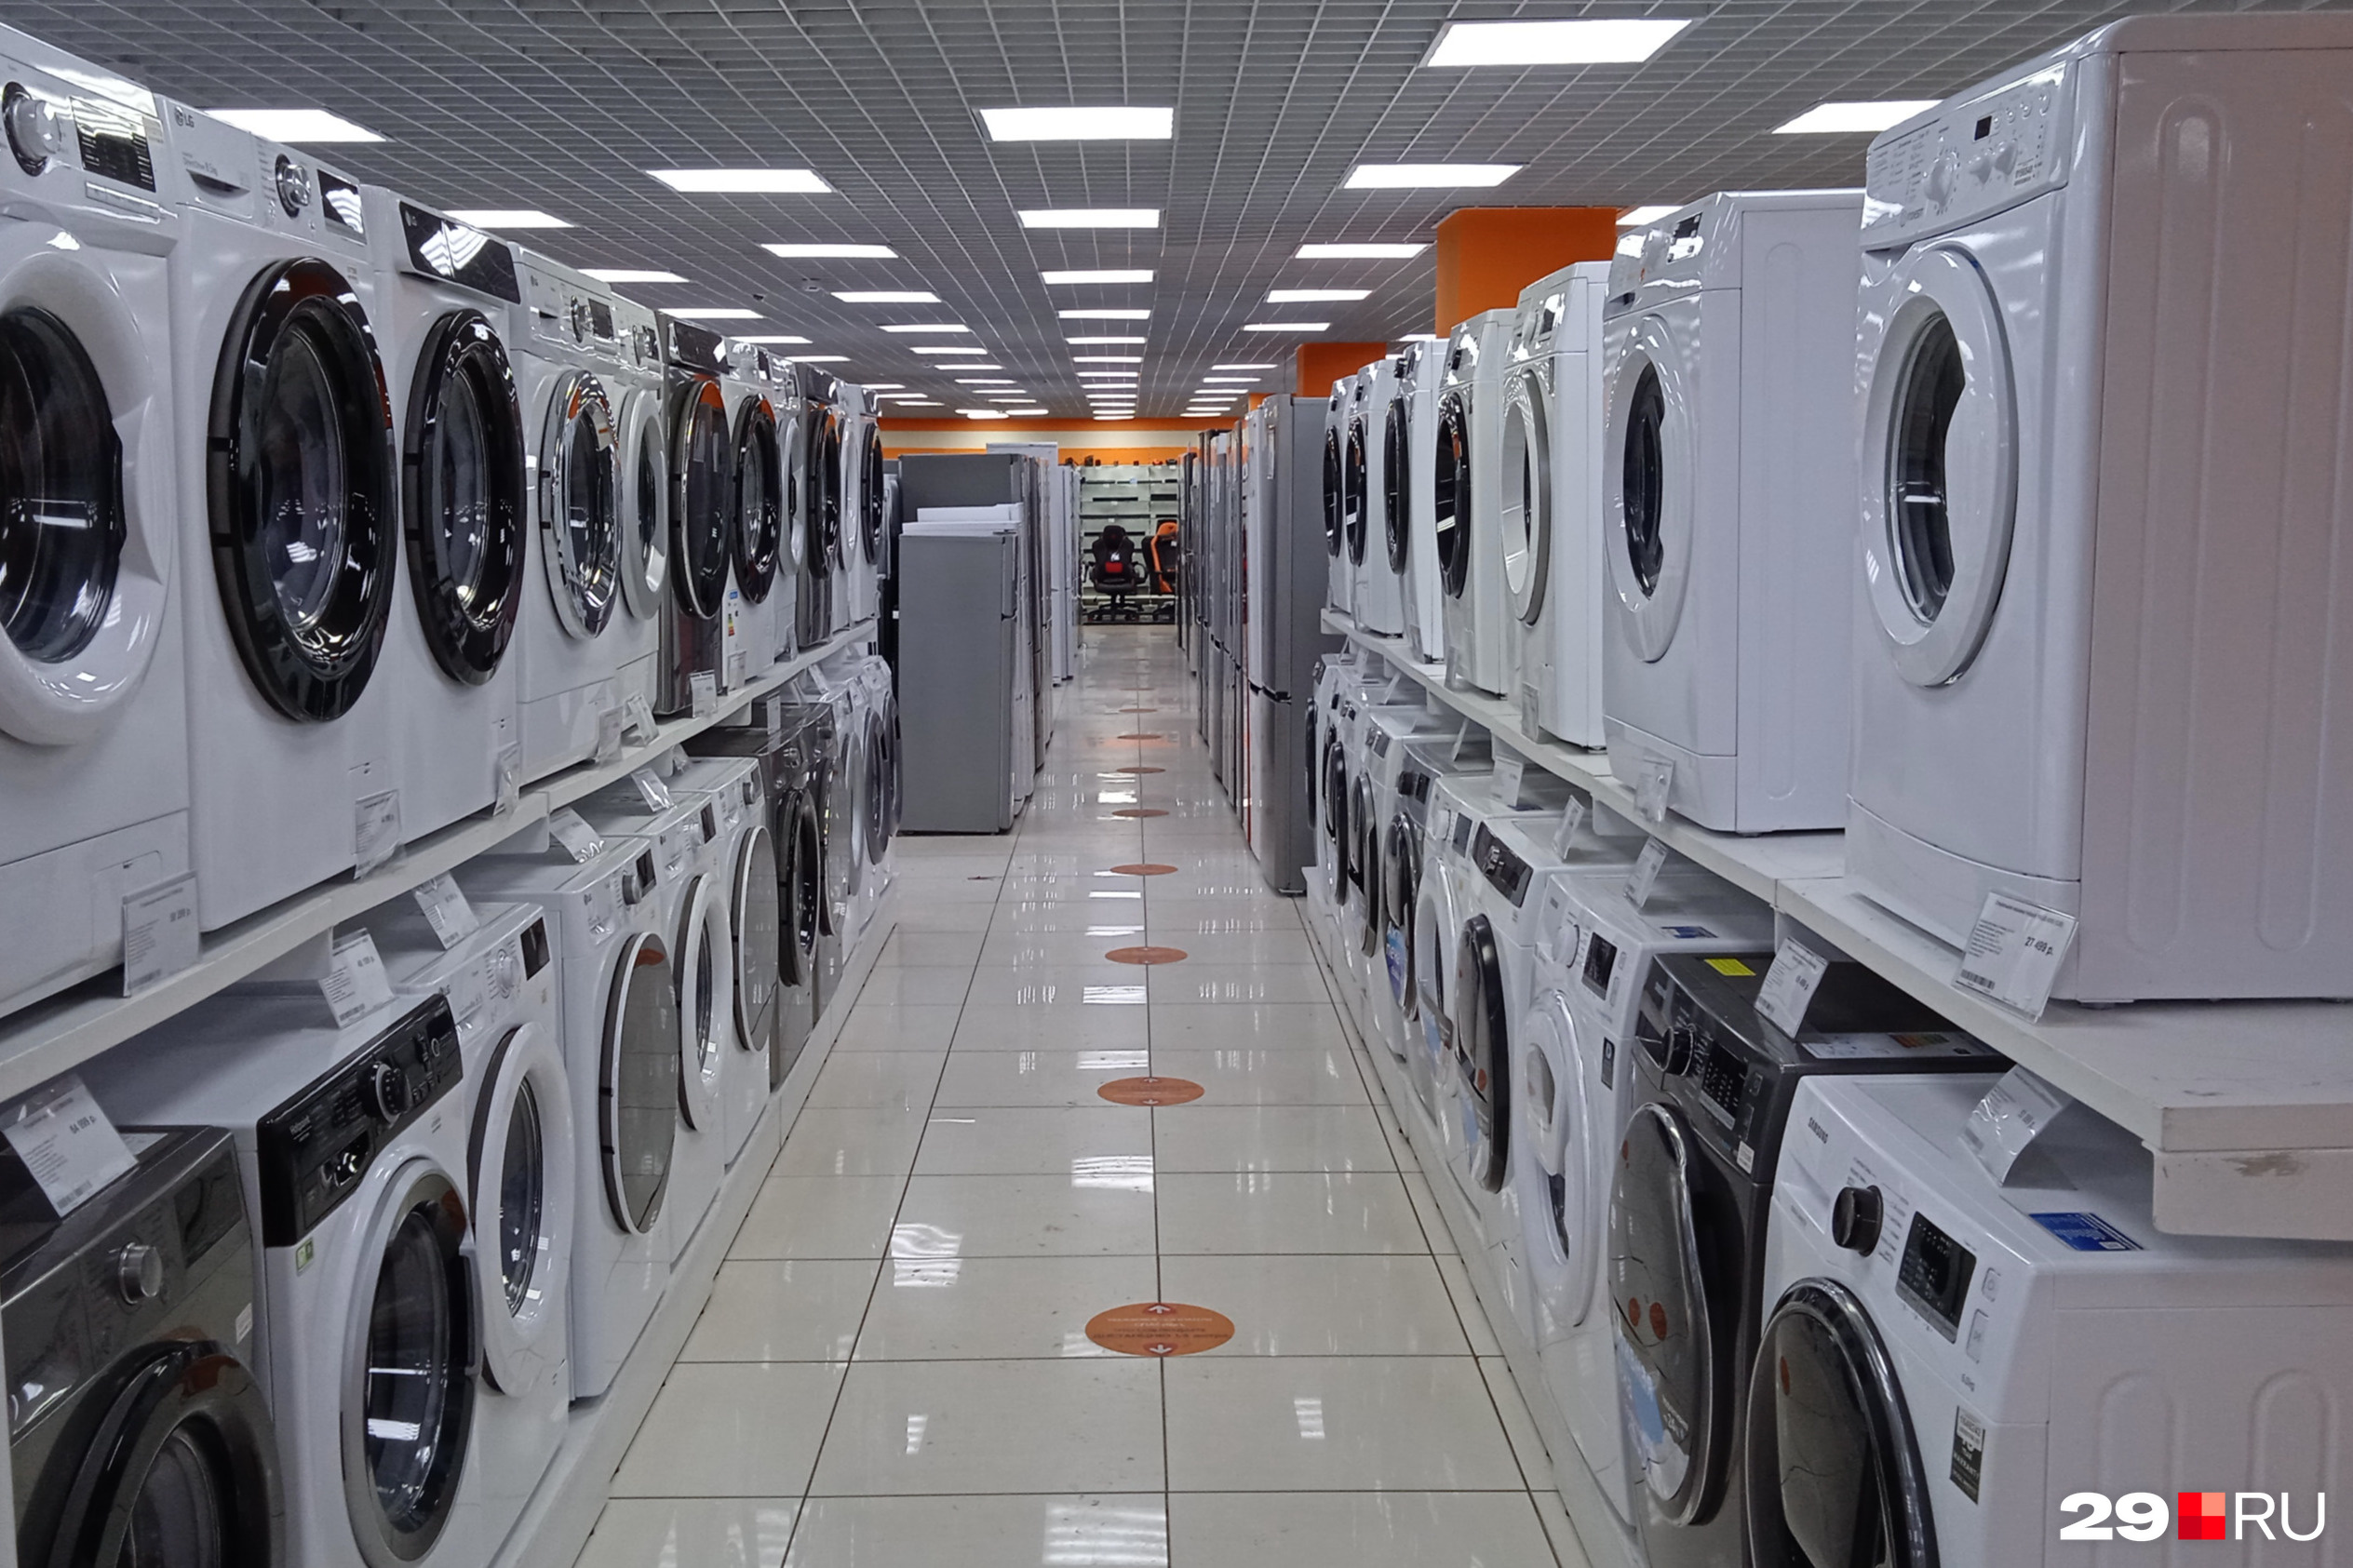 Выбор для покупок есть, но не все спешат купить новую стиральную машину